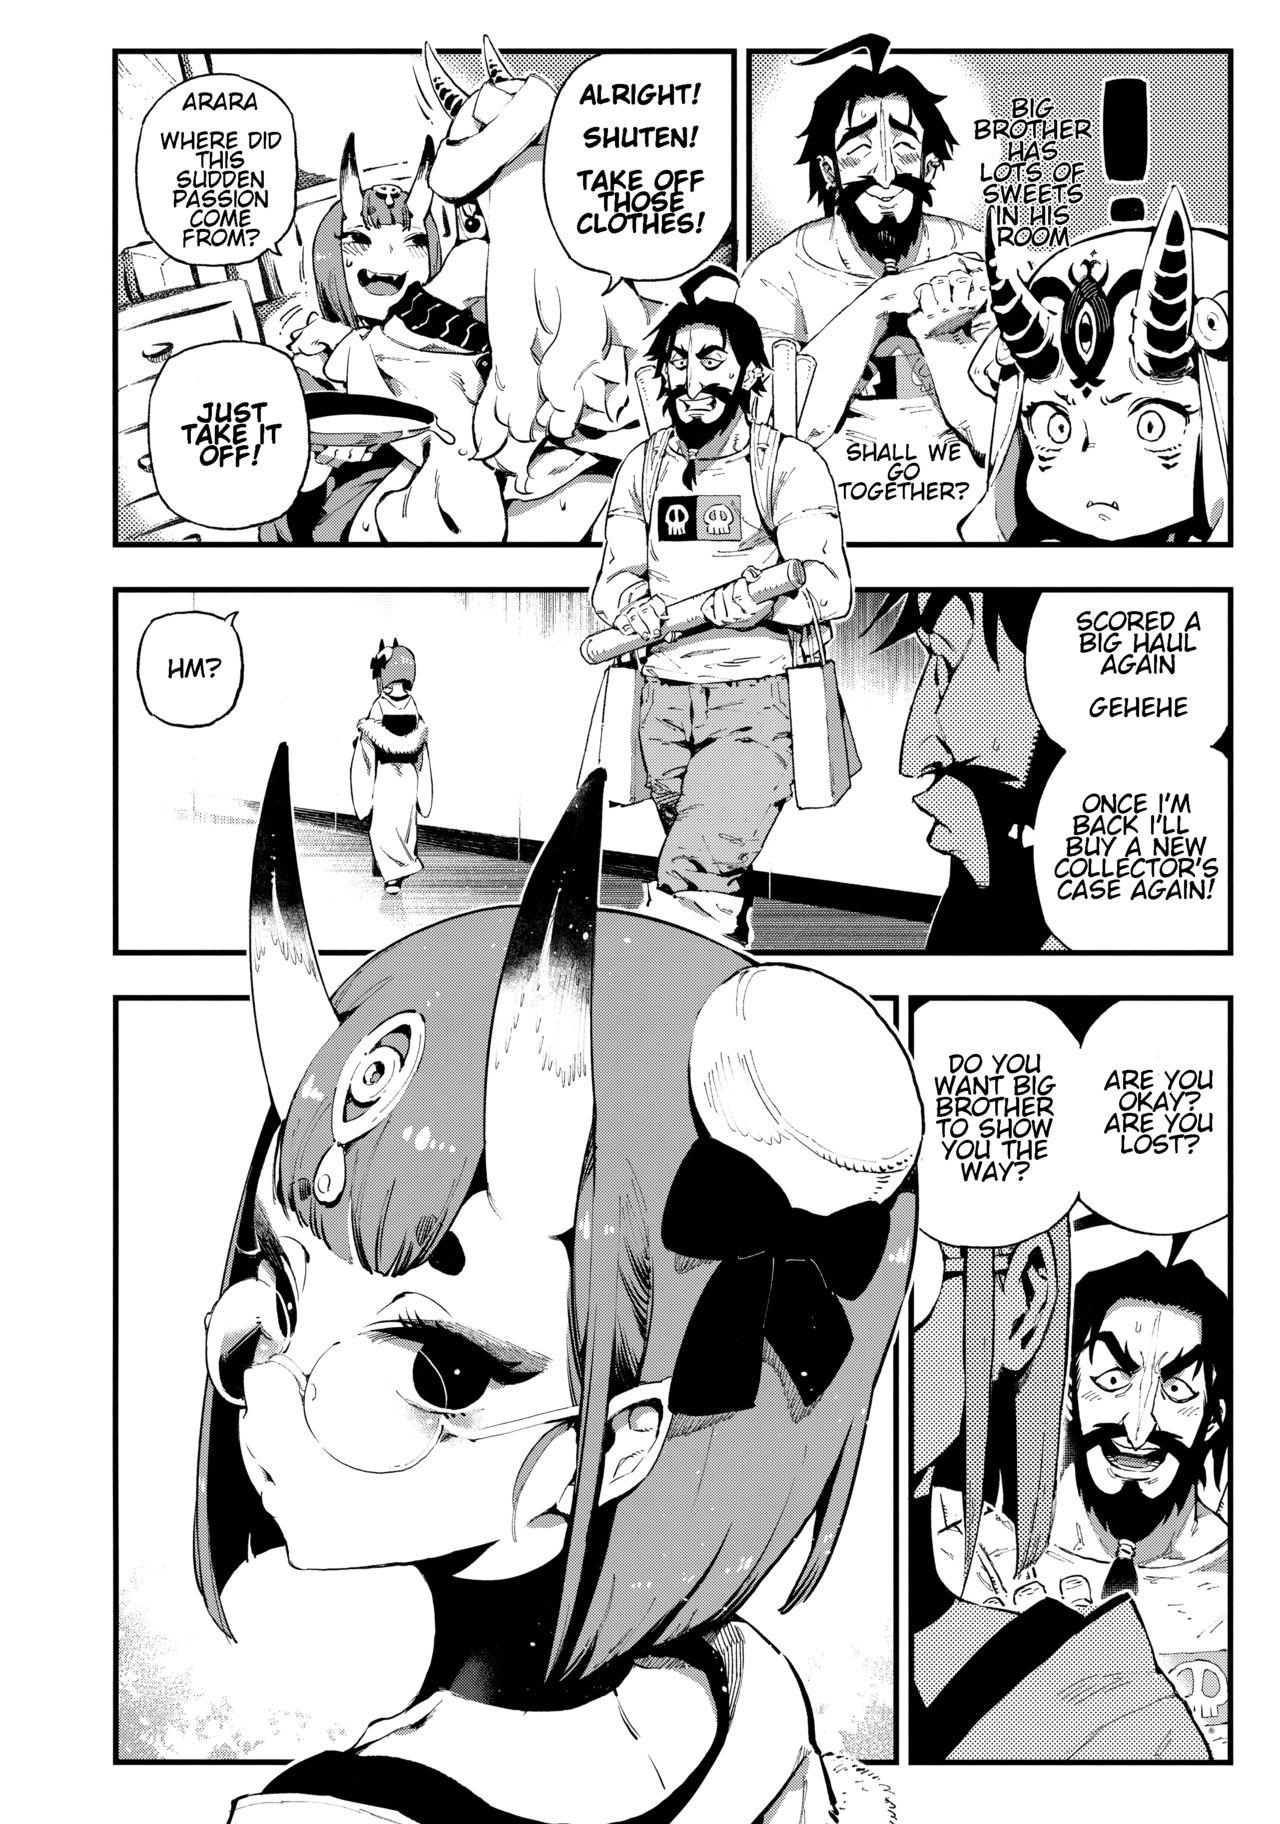 Free Blowjob CHALDEA MANIA - Shuten Douji - Fate grand order Gay Cock - Page 5